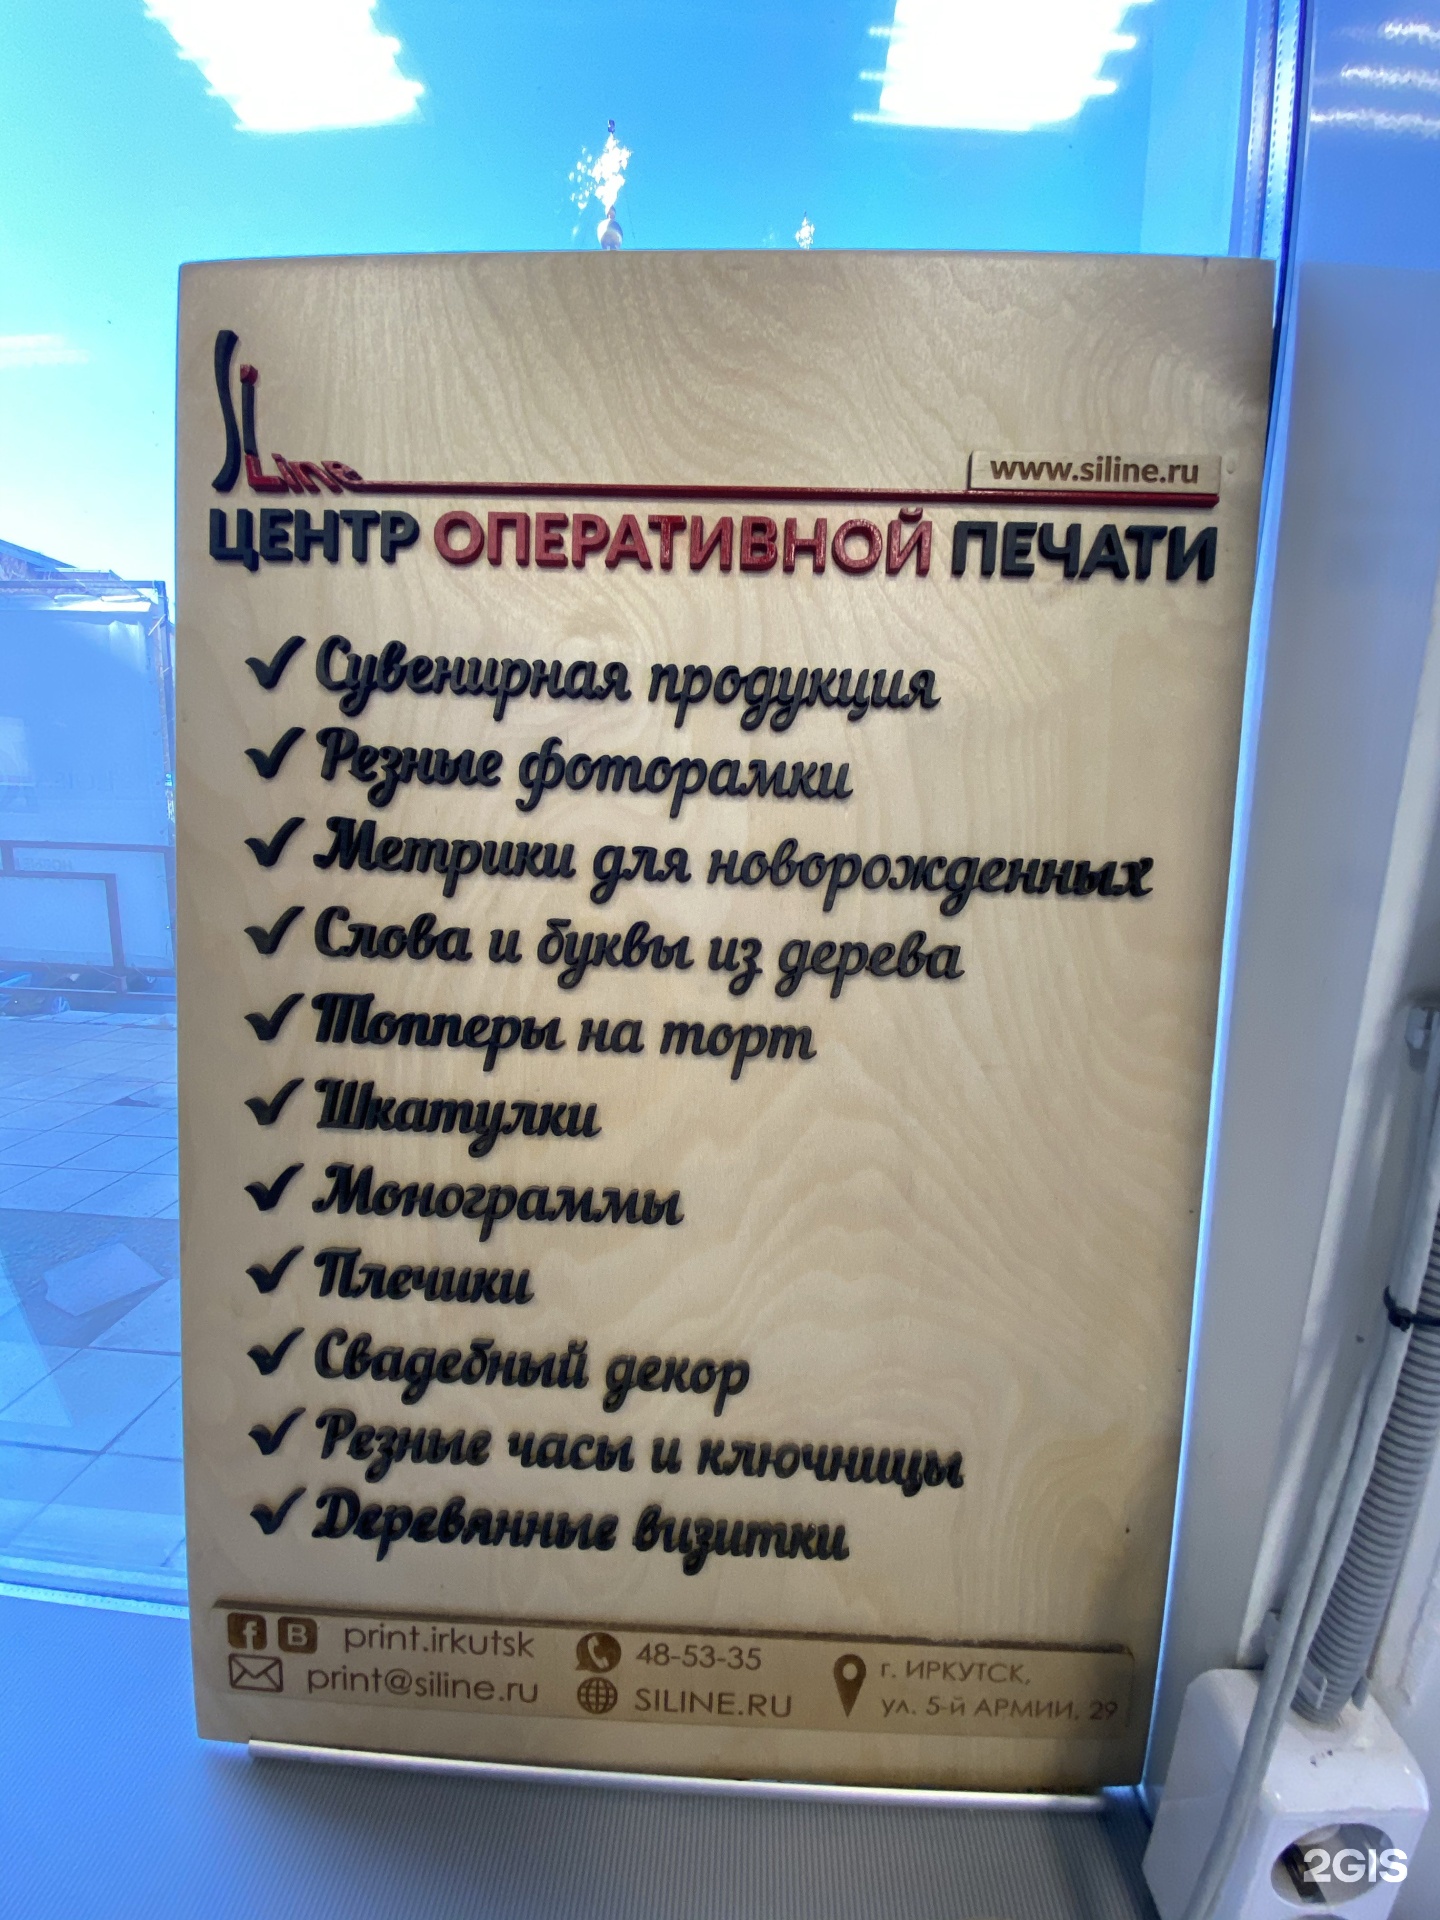 Центр печати иркутск. Центр оперативной печати Иркутск.